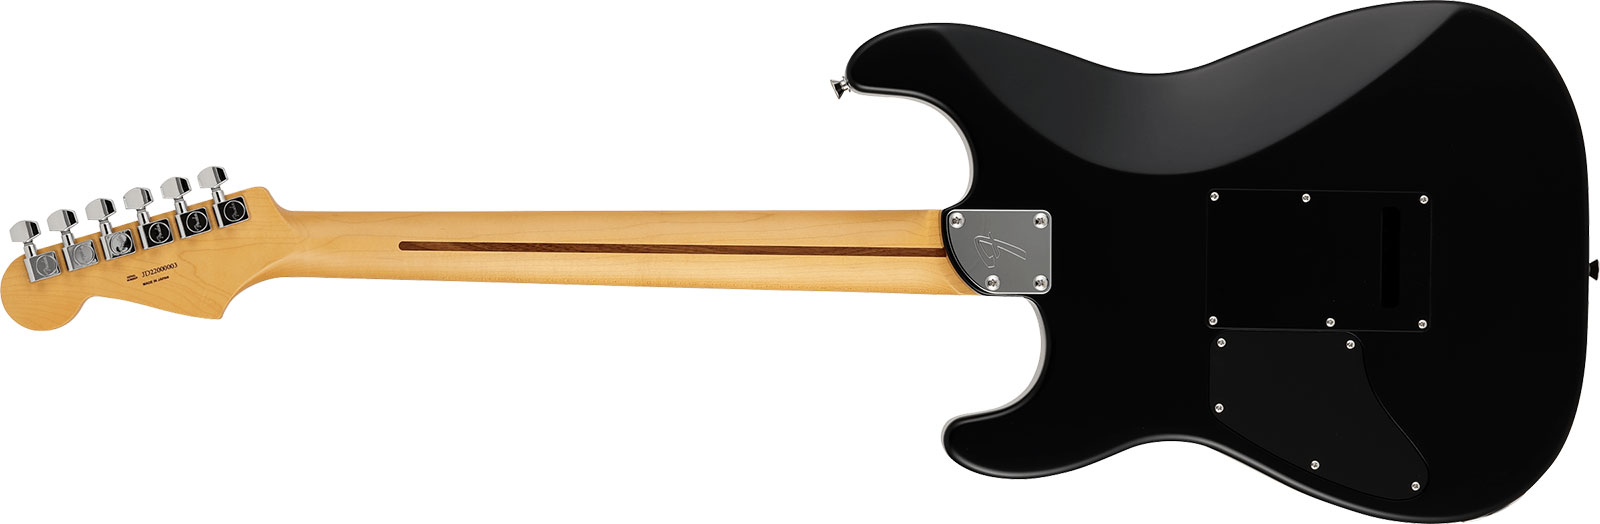 Fender Strat Elemental Mij Jap 2h Trem Rw - Stone Black - Str shape electric guitar - Variation 1